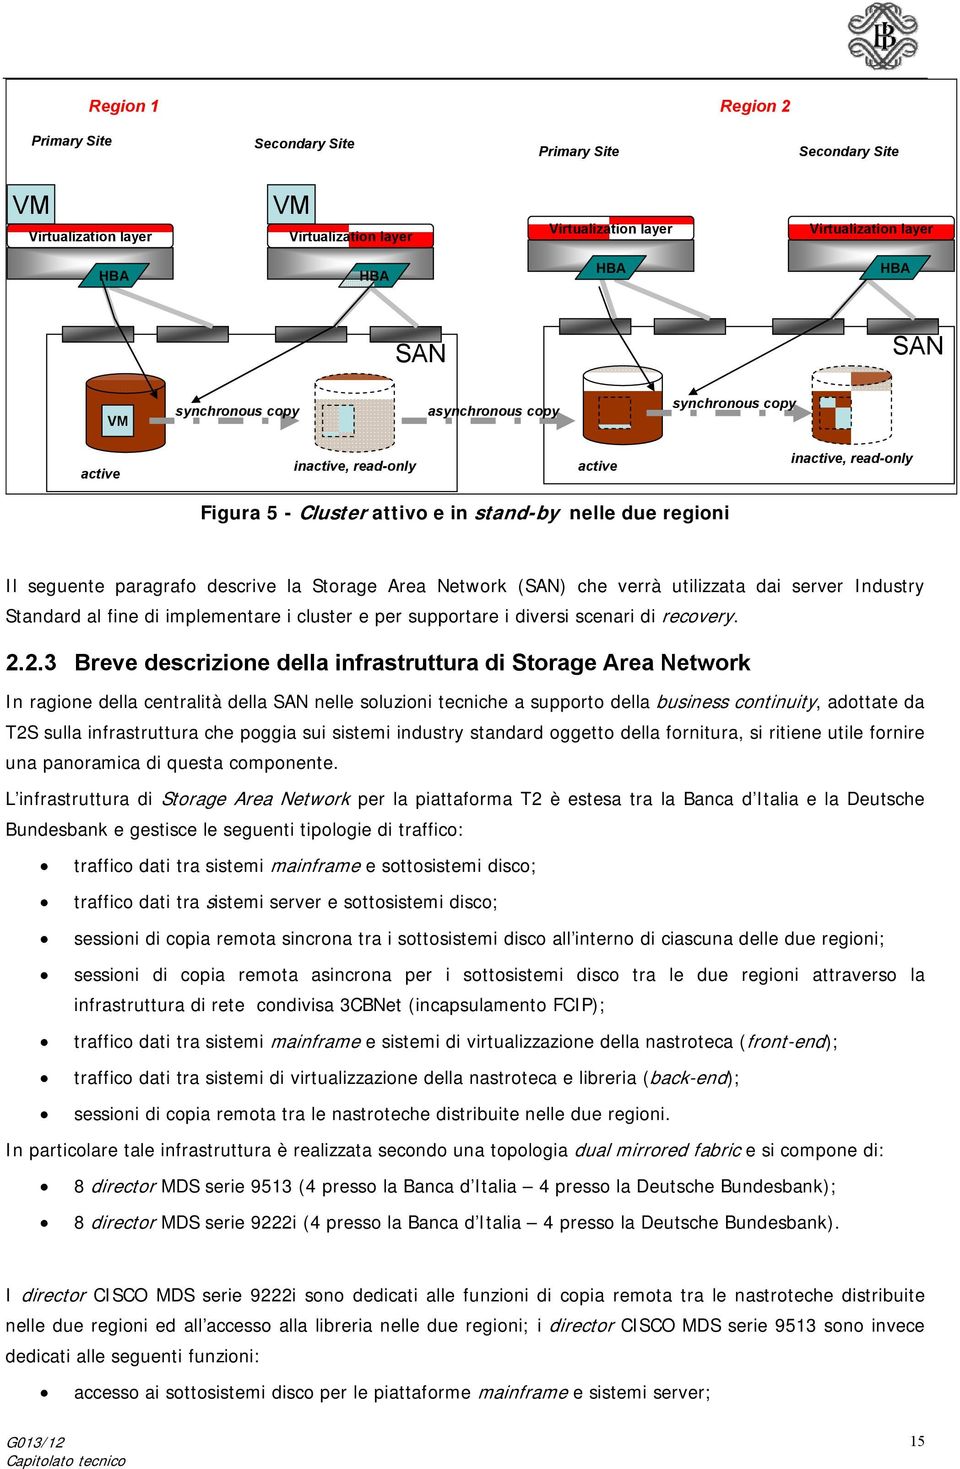 Storage Area Network (SAN) che verrà utilizzata dai server Industry Standard al fine di implementare i cluster e per supportare i diversi scenari di recovery. 2.